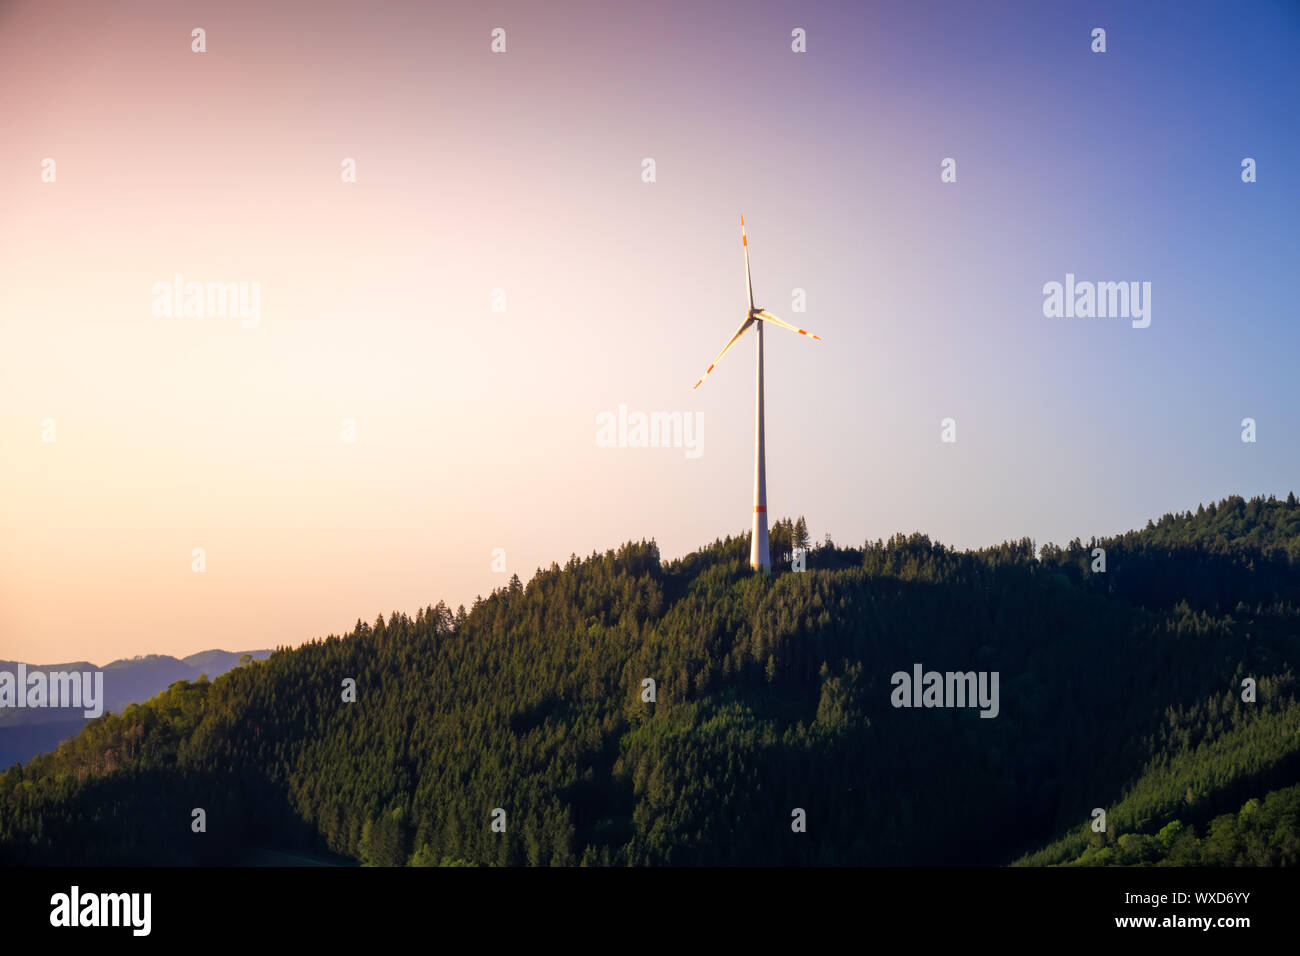 Paysage avec de l'énergie éolienne dans la région de la Forêt-Noire Allemagne Banque D'Images